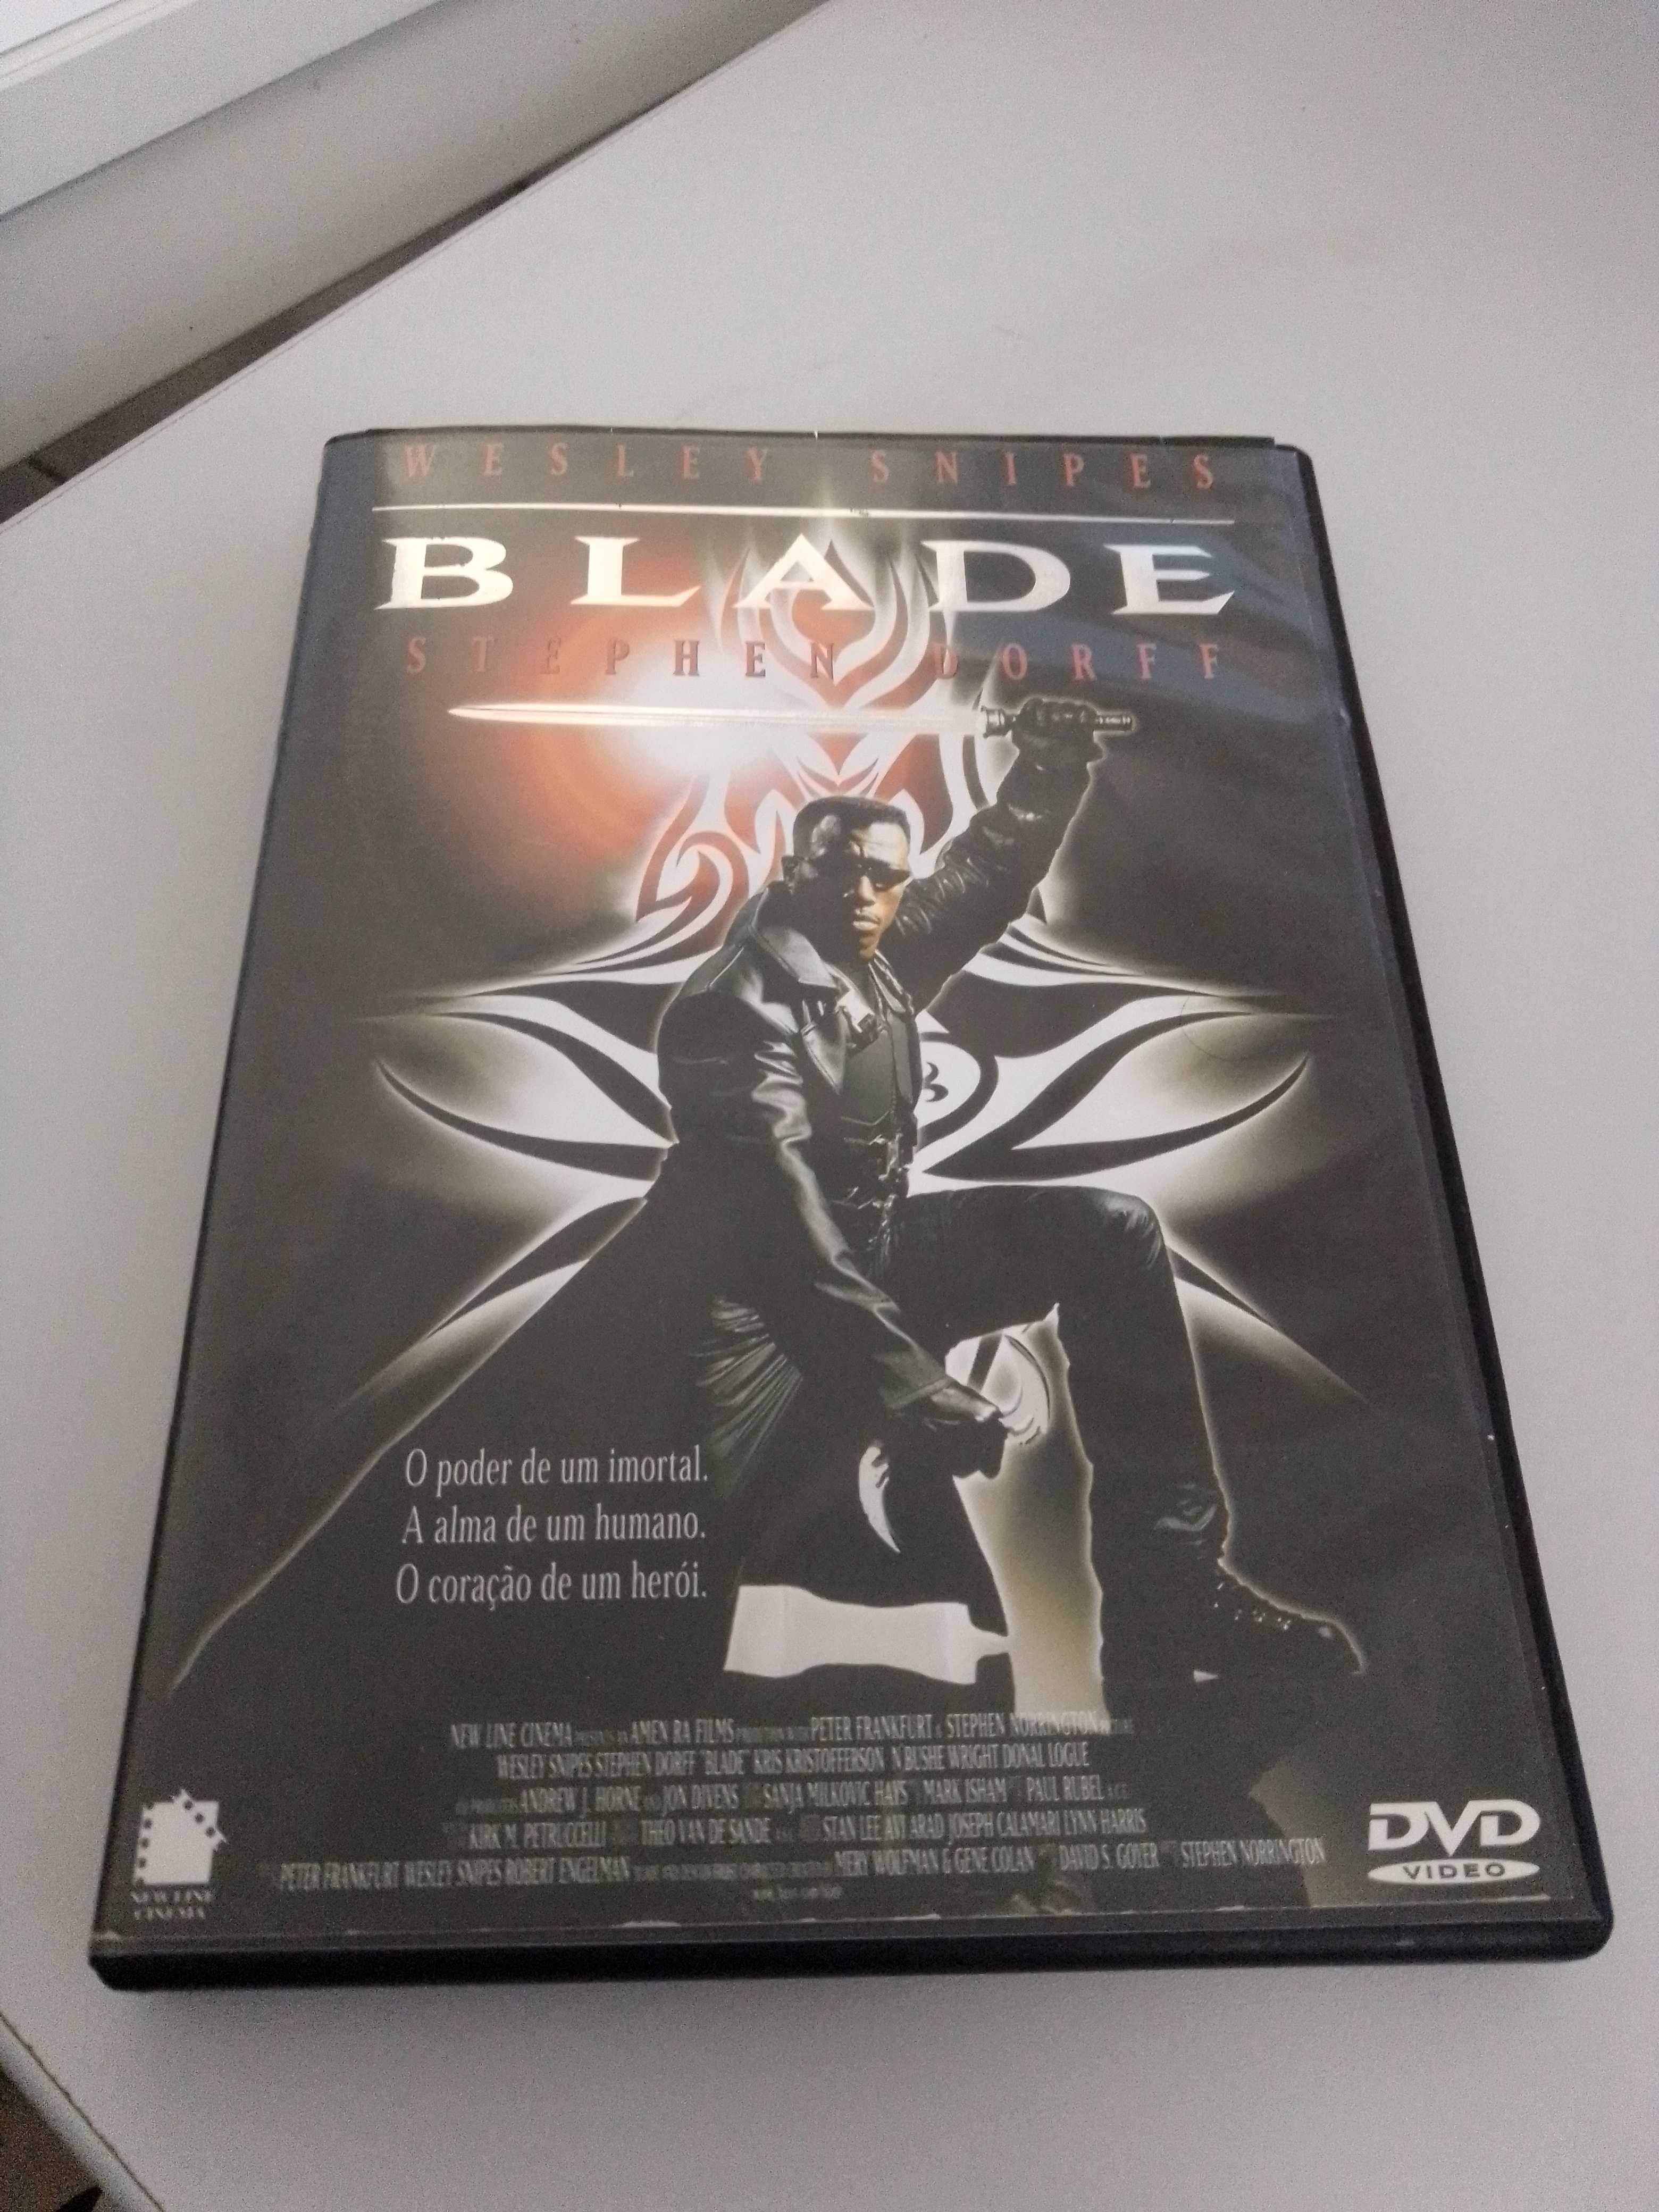 DVD BLADE 1 com Wesley Snipes  ENTREGA IMEDIATA Filme Snypes Dorff